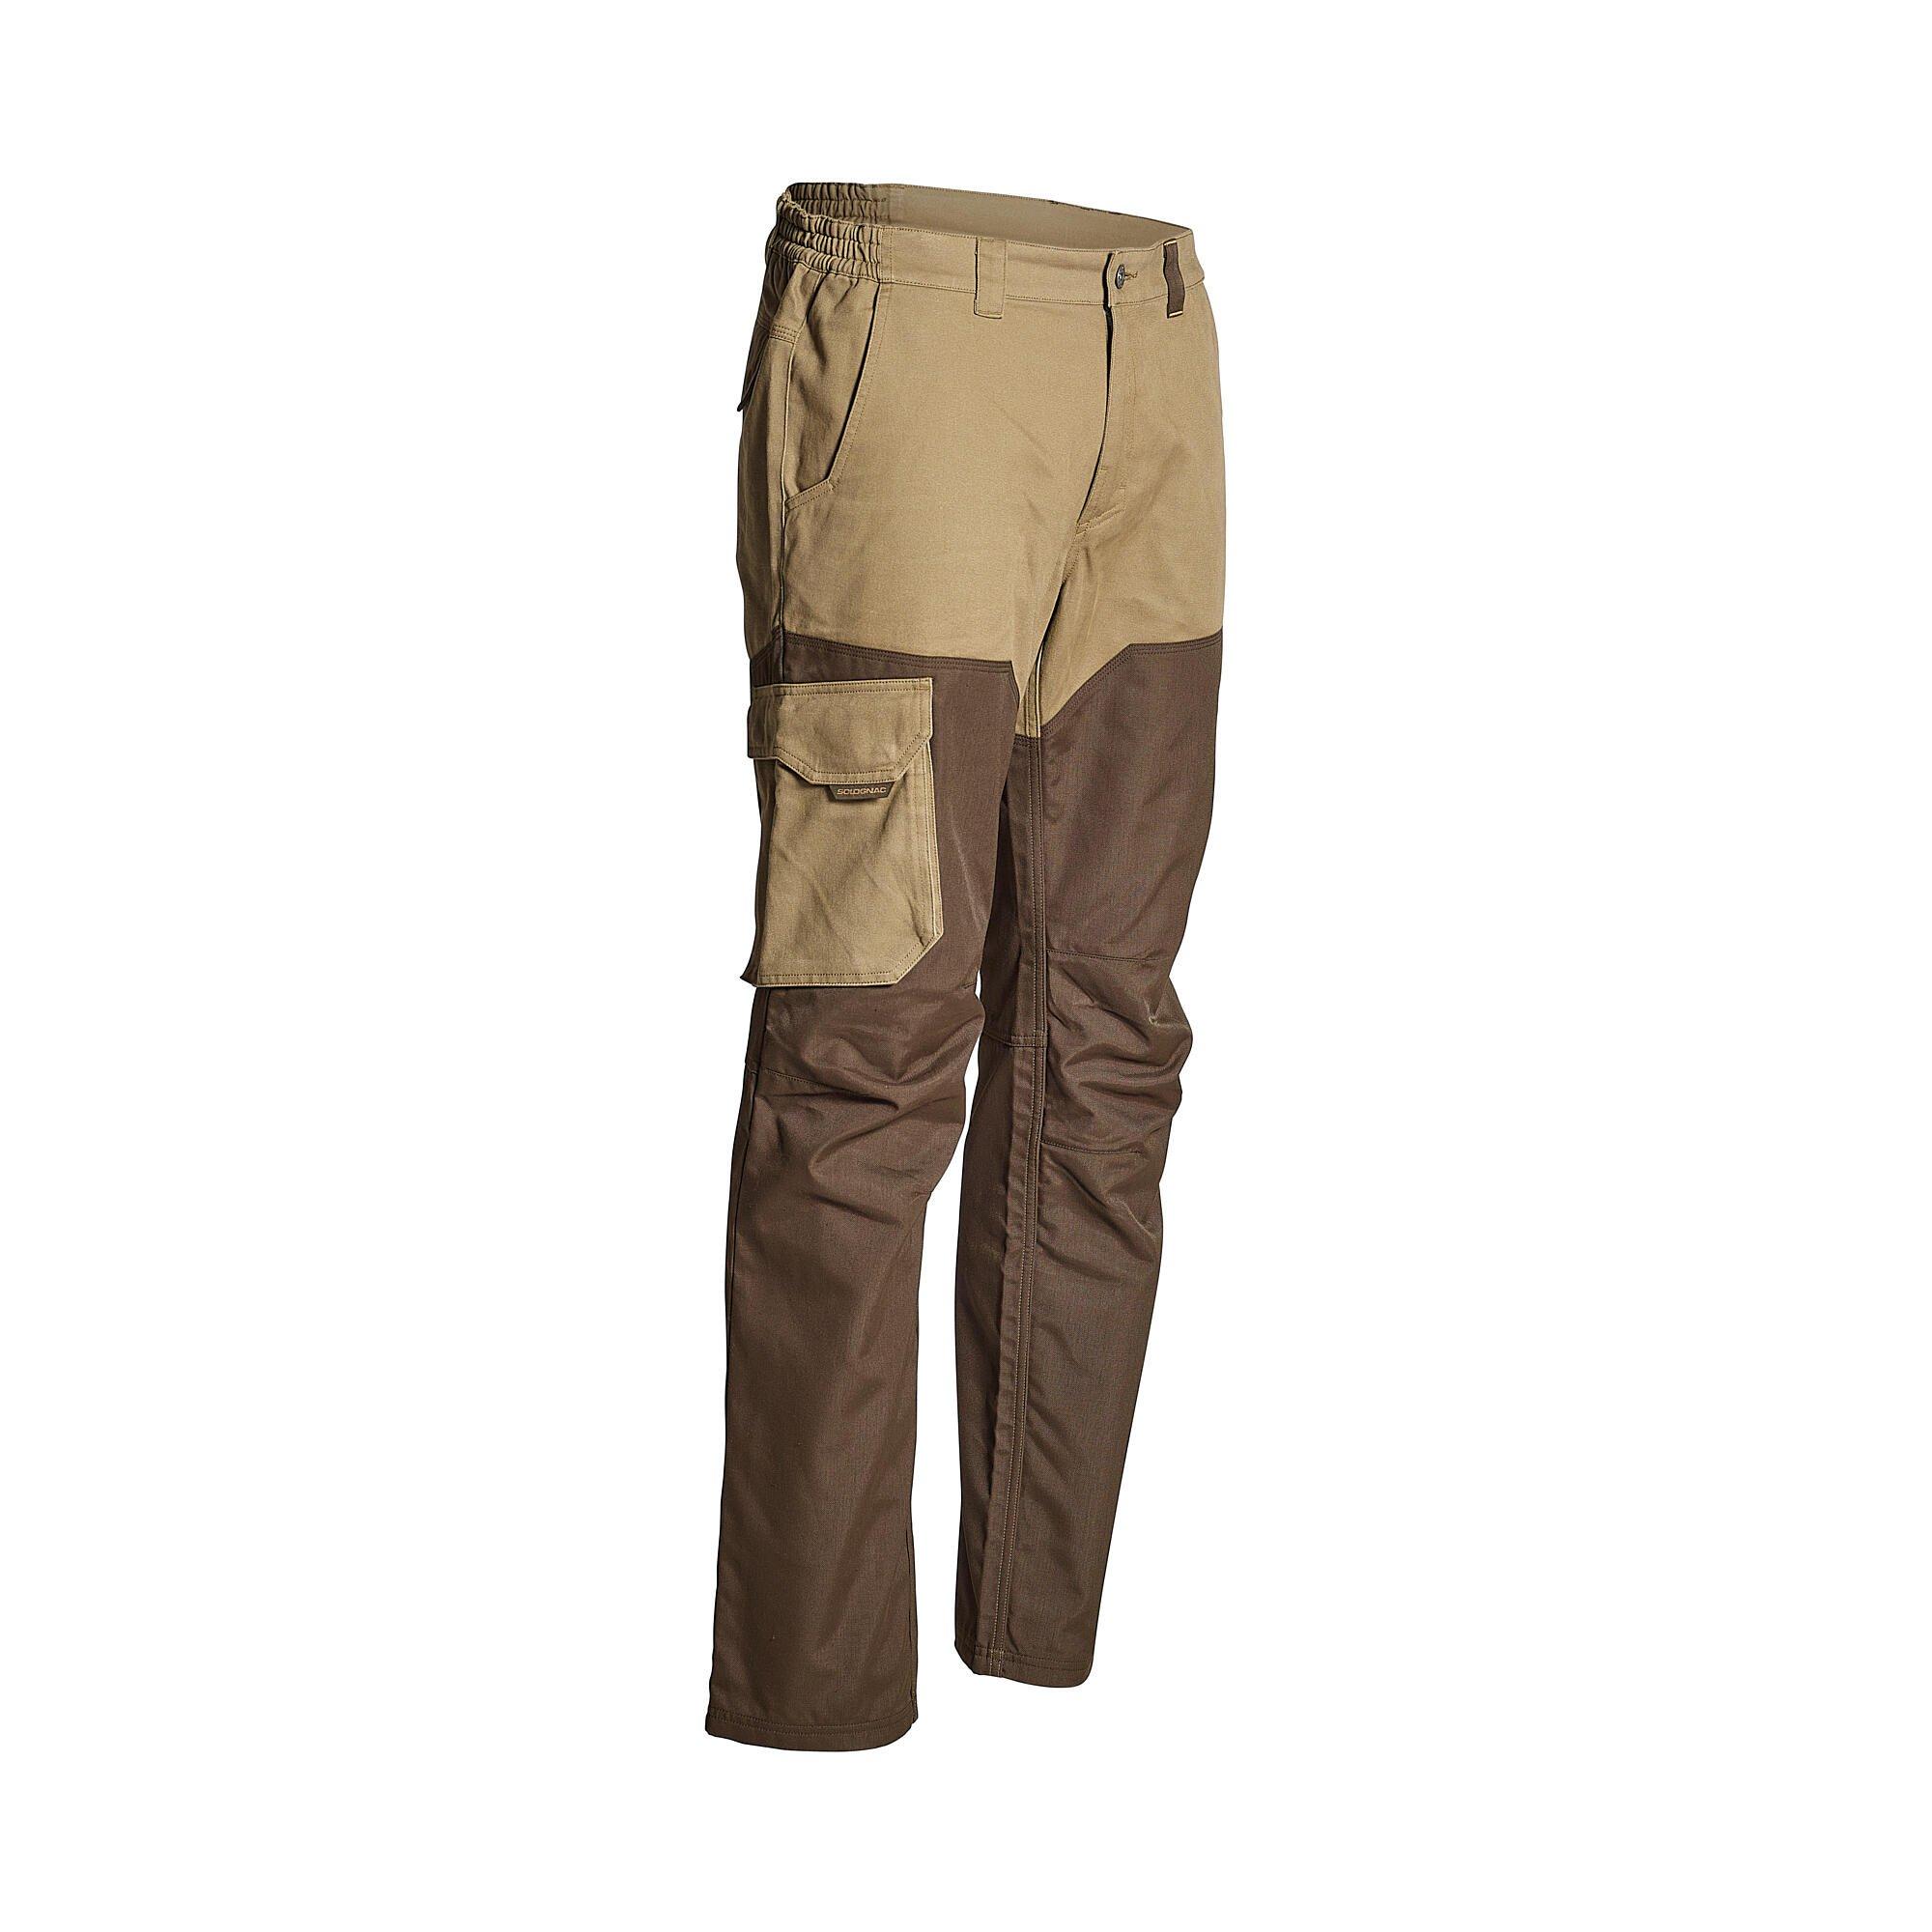 чехол decathlon solognac 900 130 см коричневый Усиленные брюки Decathlon для сухой погоды Solognac, коричневый